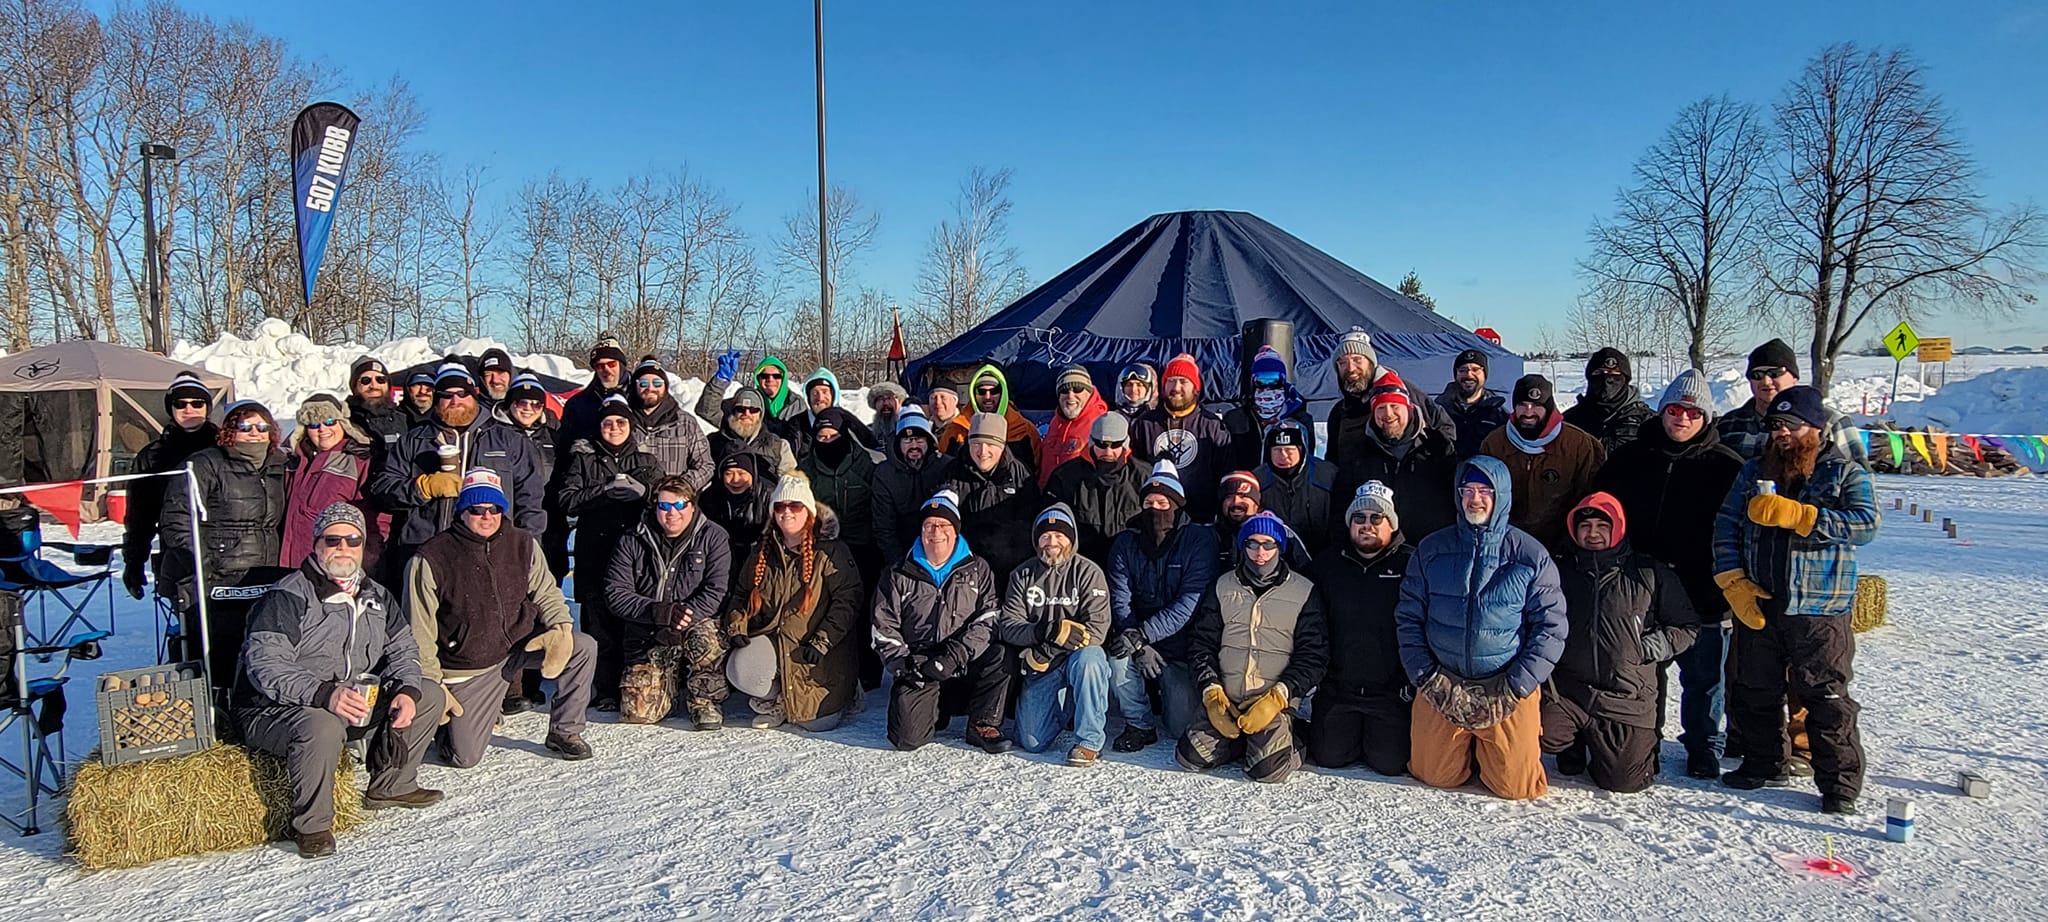 Lake Superior Ice Festival Kubb Tournament